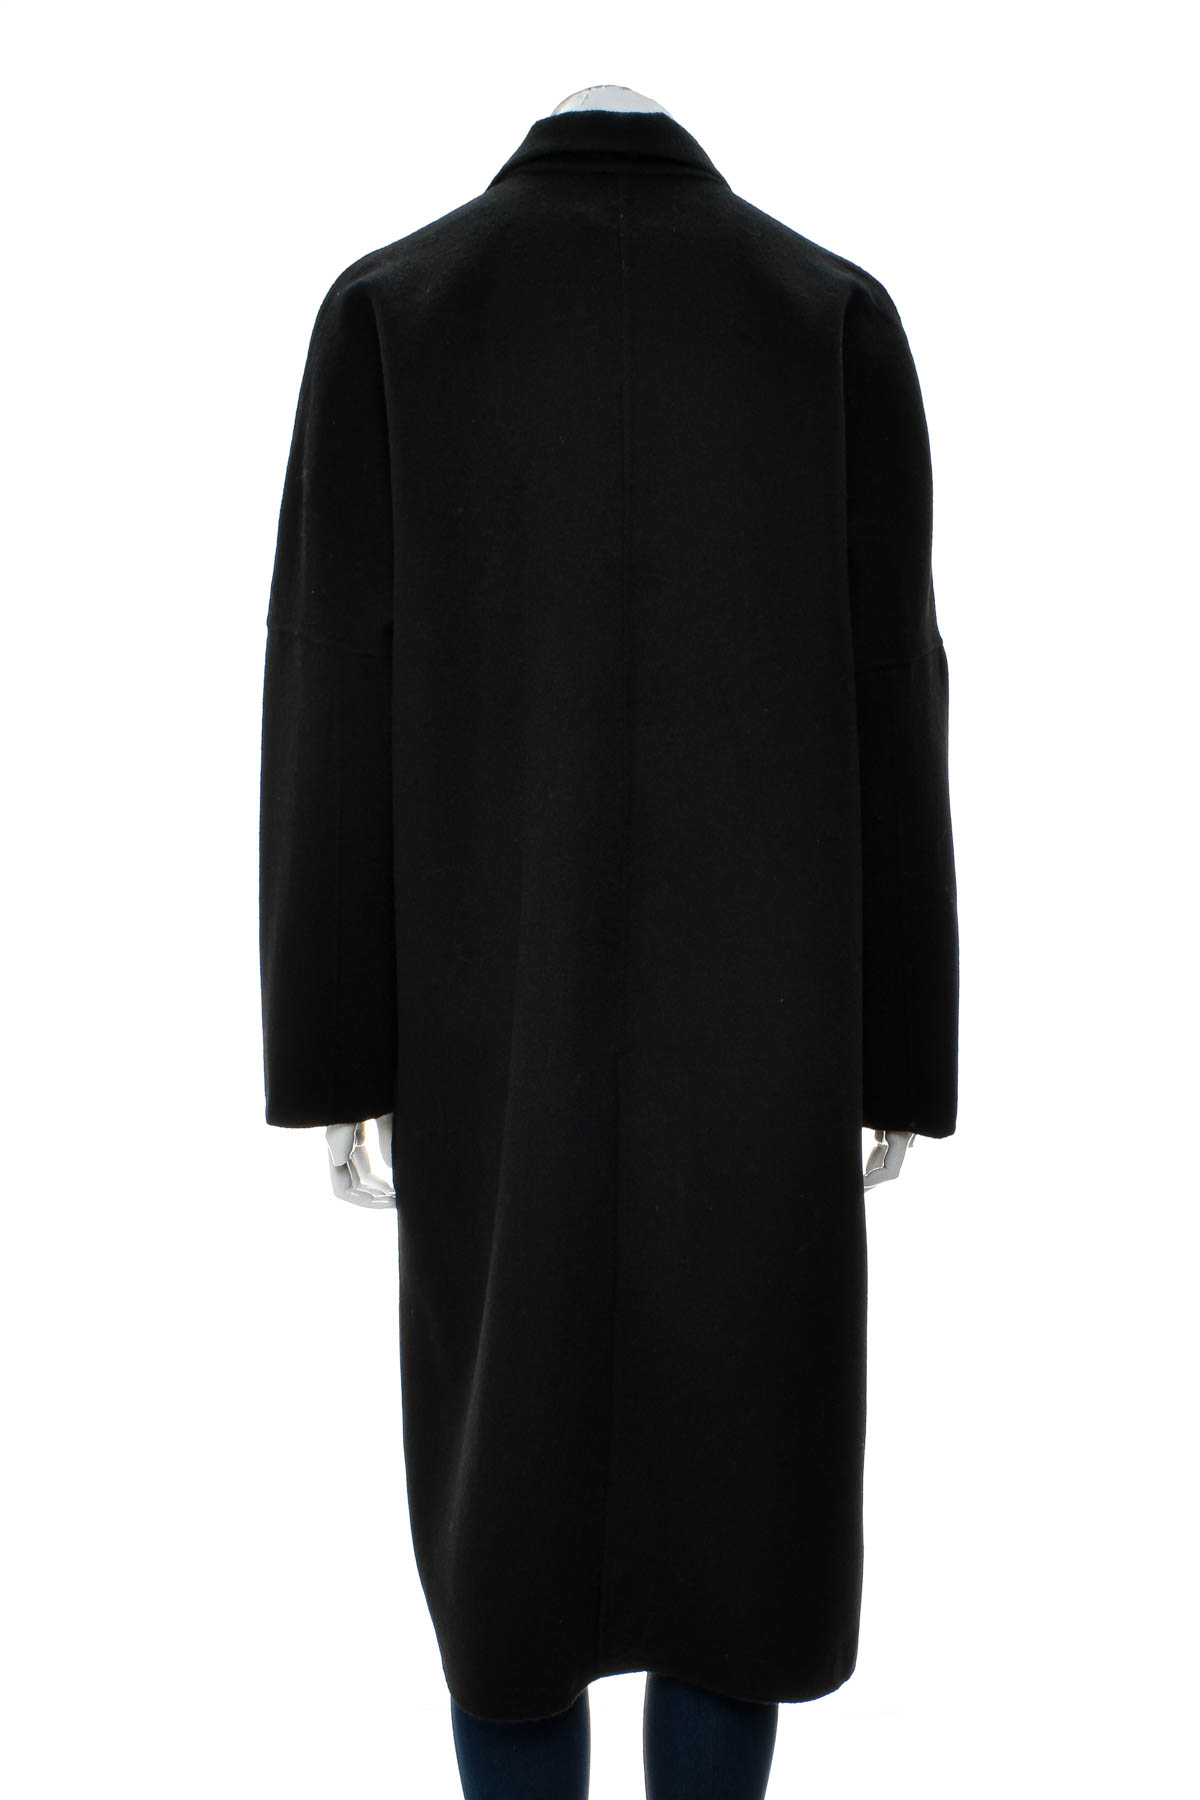 Women's coat - PIPER - 1